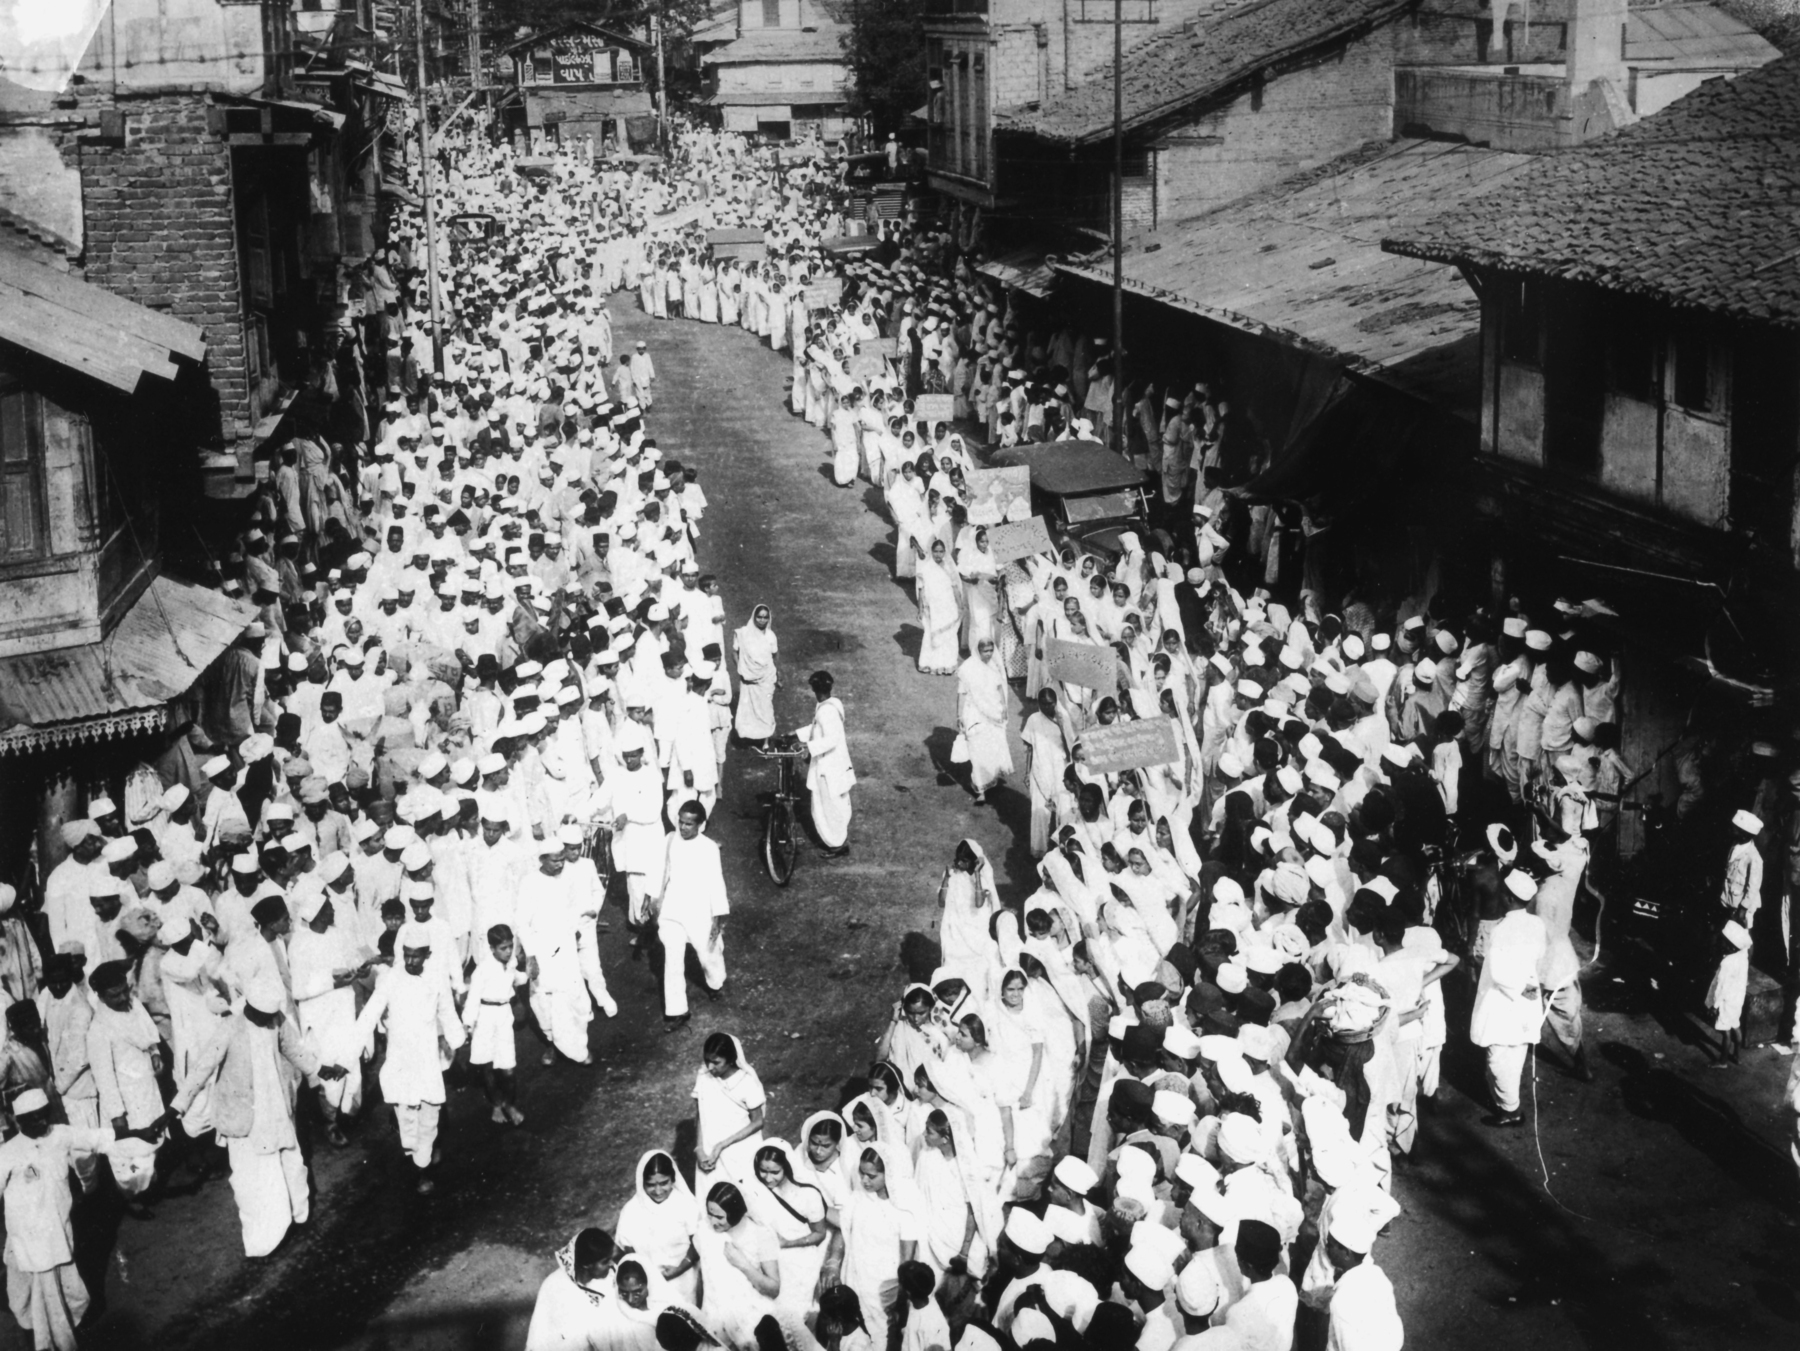 Fotografia em preto e branco. Vistas de cima, centenas de pessoas aglomeradas e dispostas em filas em uma rua, todas trajando vestimentas claras.